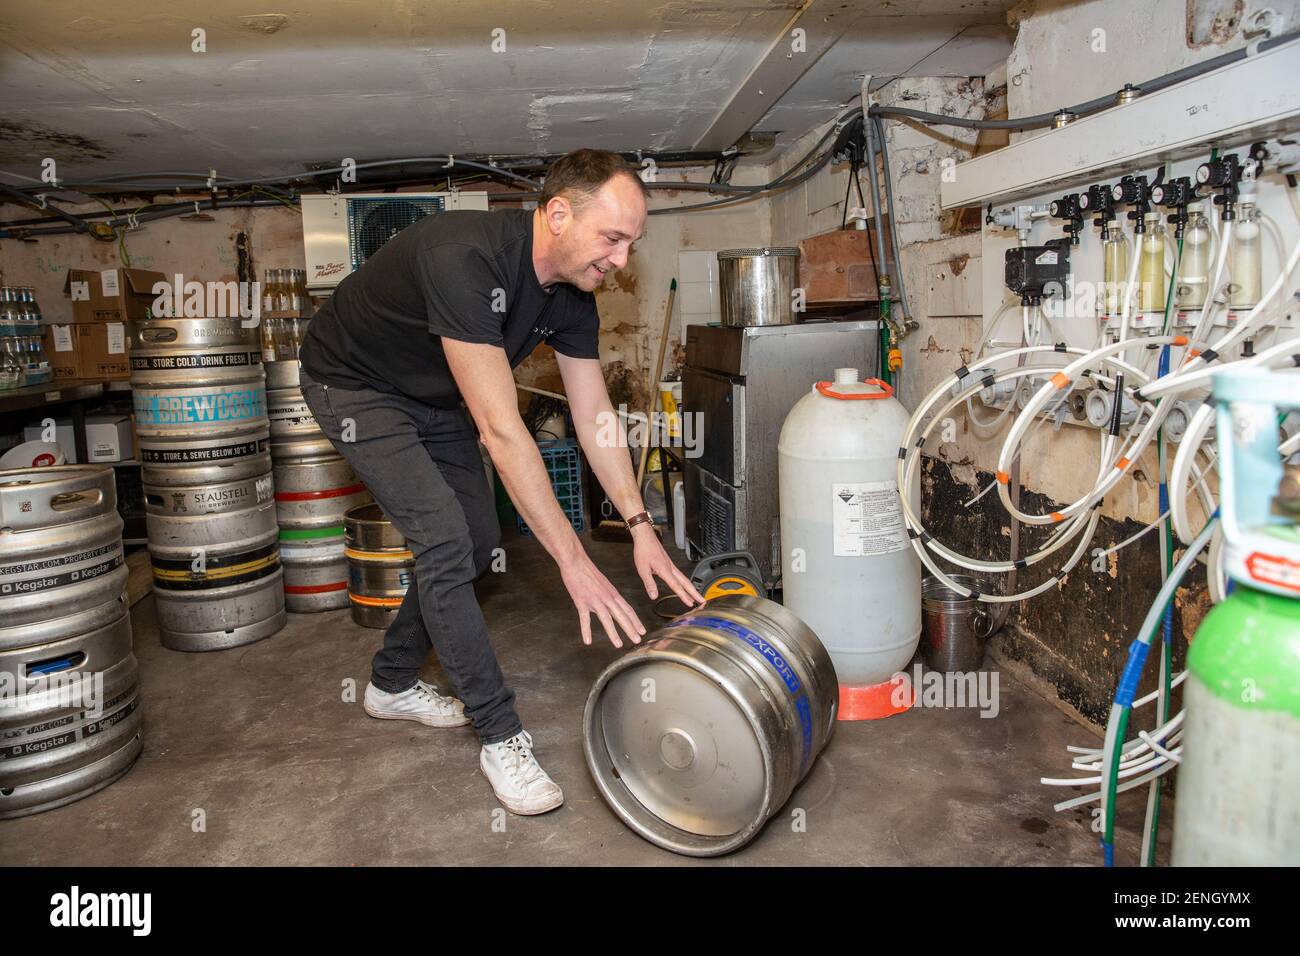 Sean Hughes propietario de 'Dylans' pub en St Albans prepara barricas de cerveza para reabrir su pub después de que el cierre de seguridad de coronavirus#3 sea levantado en Inglaterra. Foto de stock